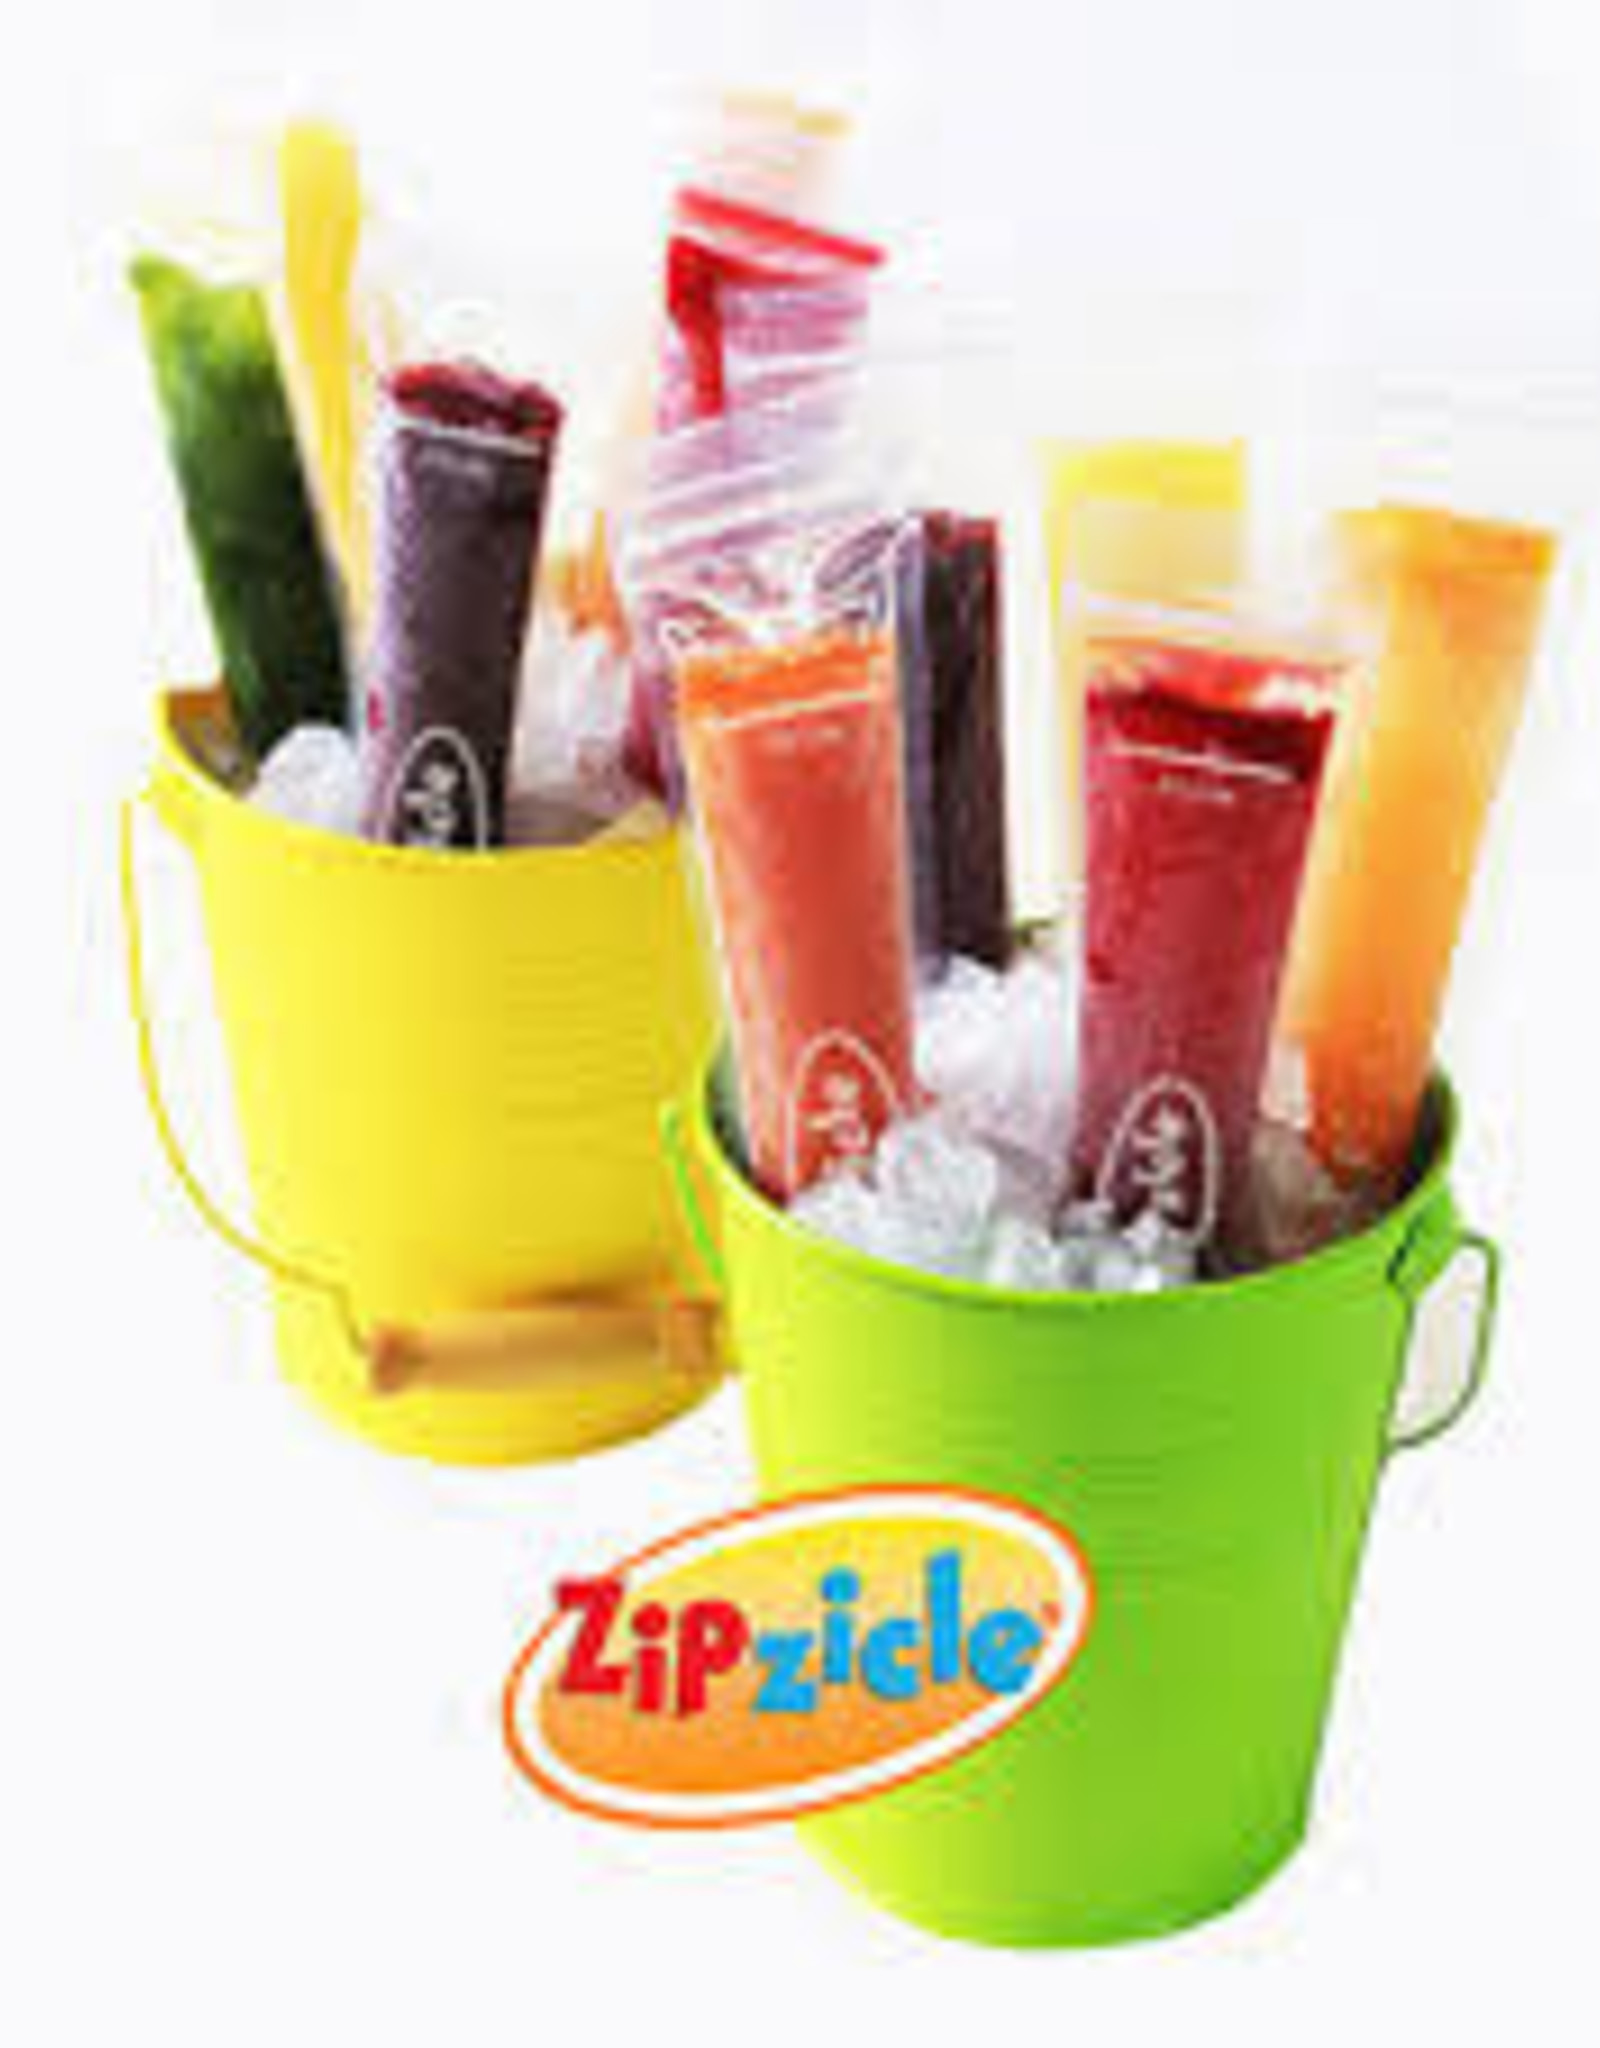 Zipzicle Ice-Pop Molds (18pc)